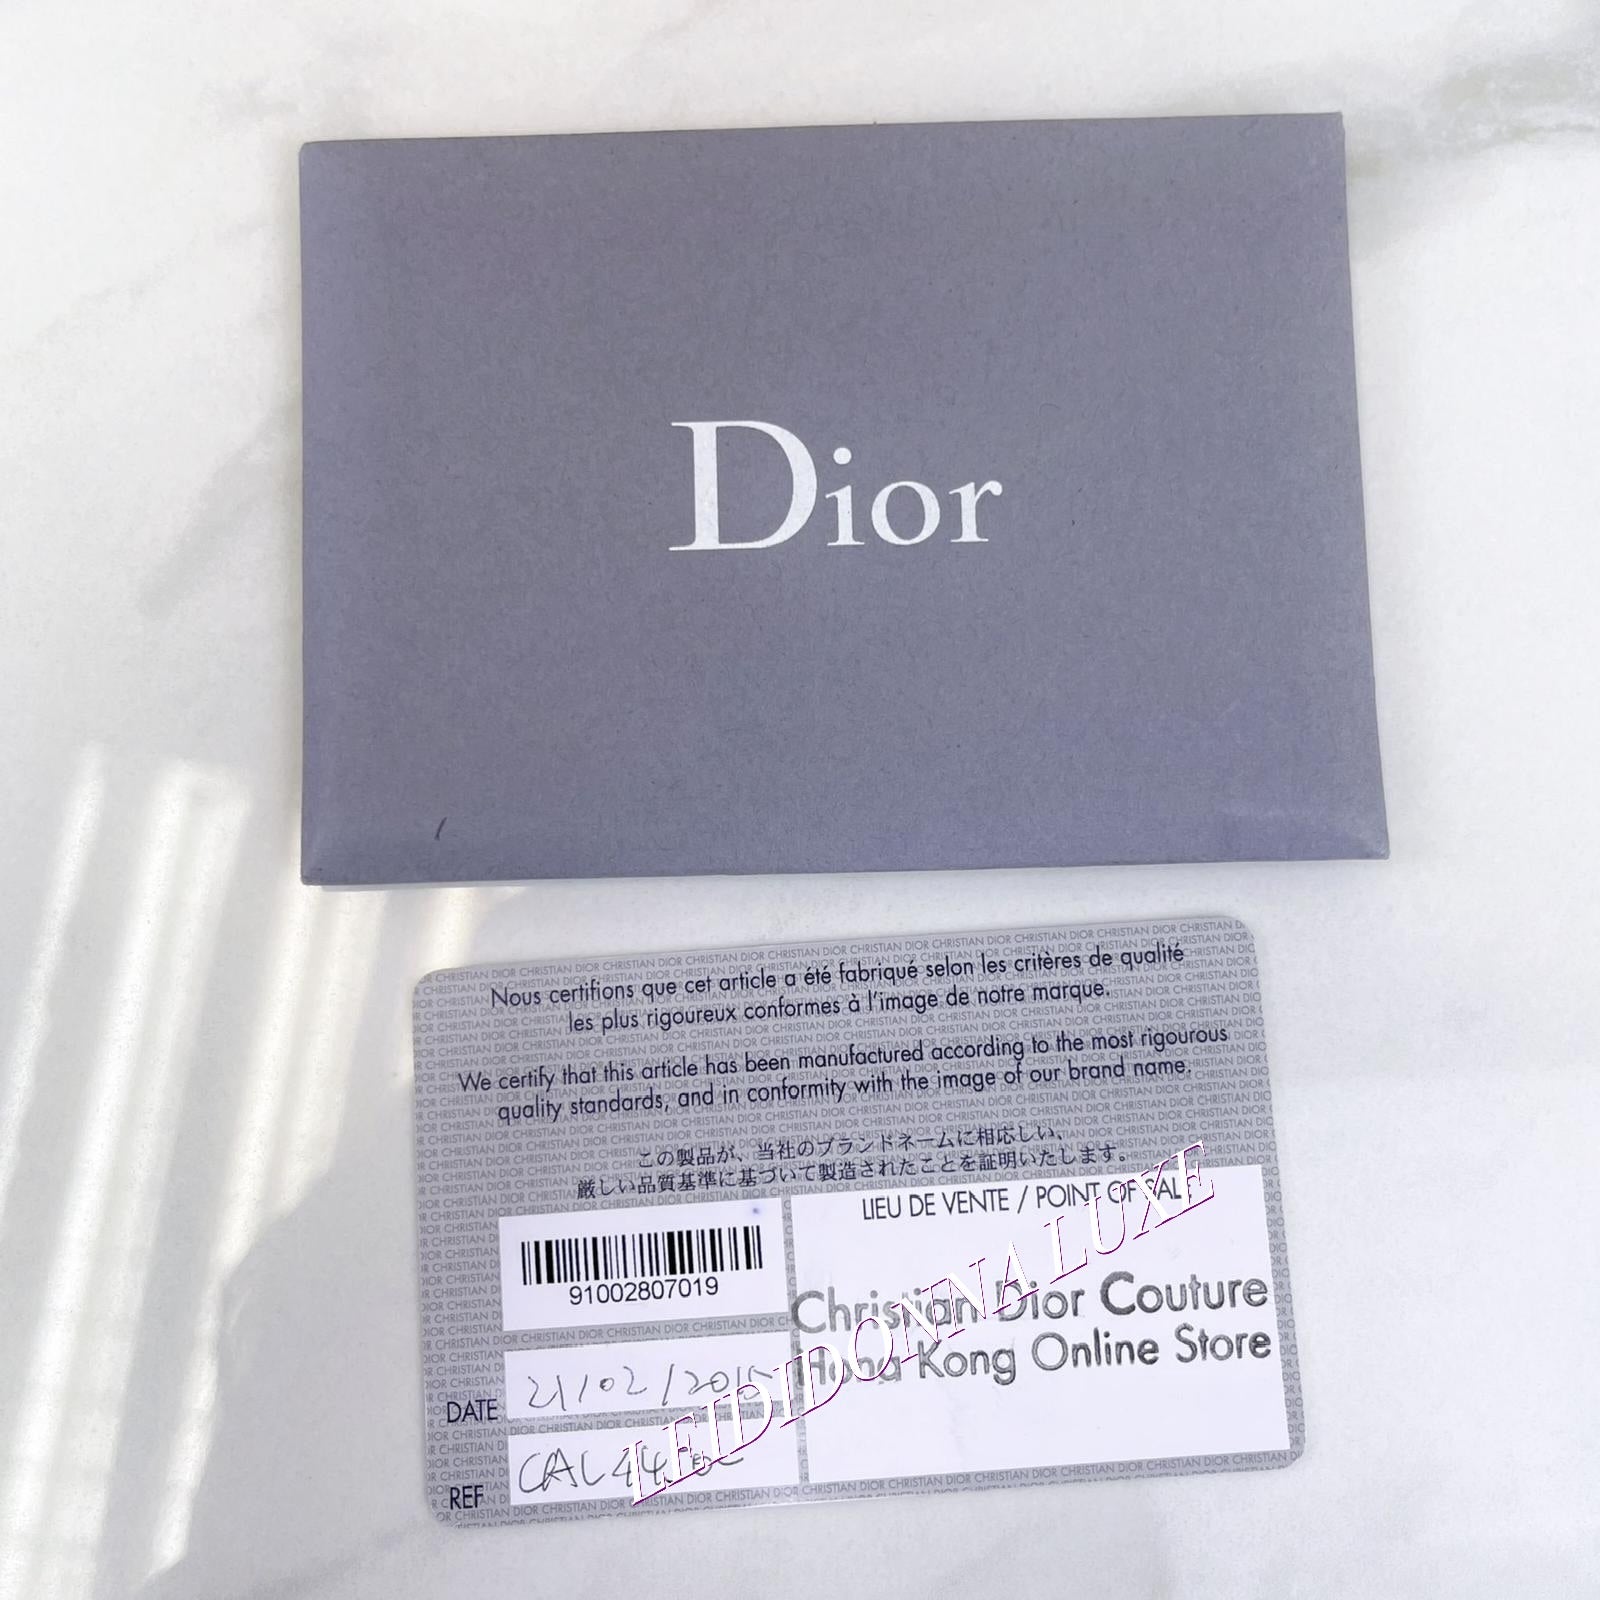 Christian Dior Lady Dior - Medium